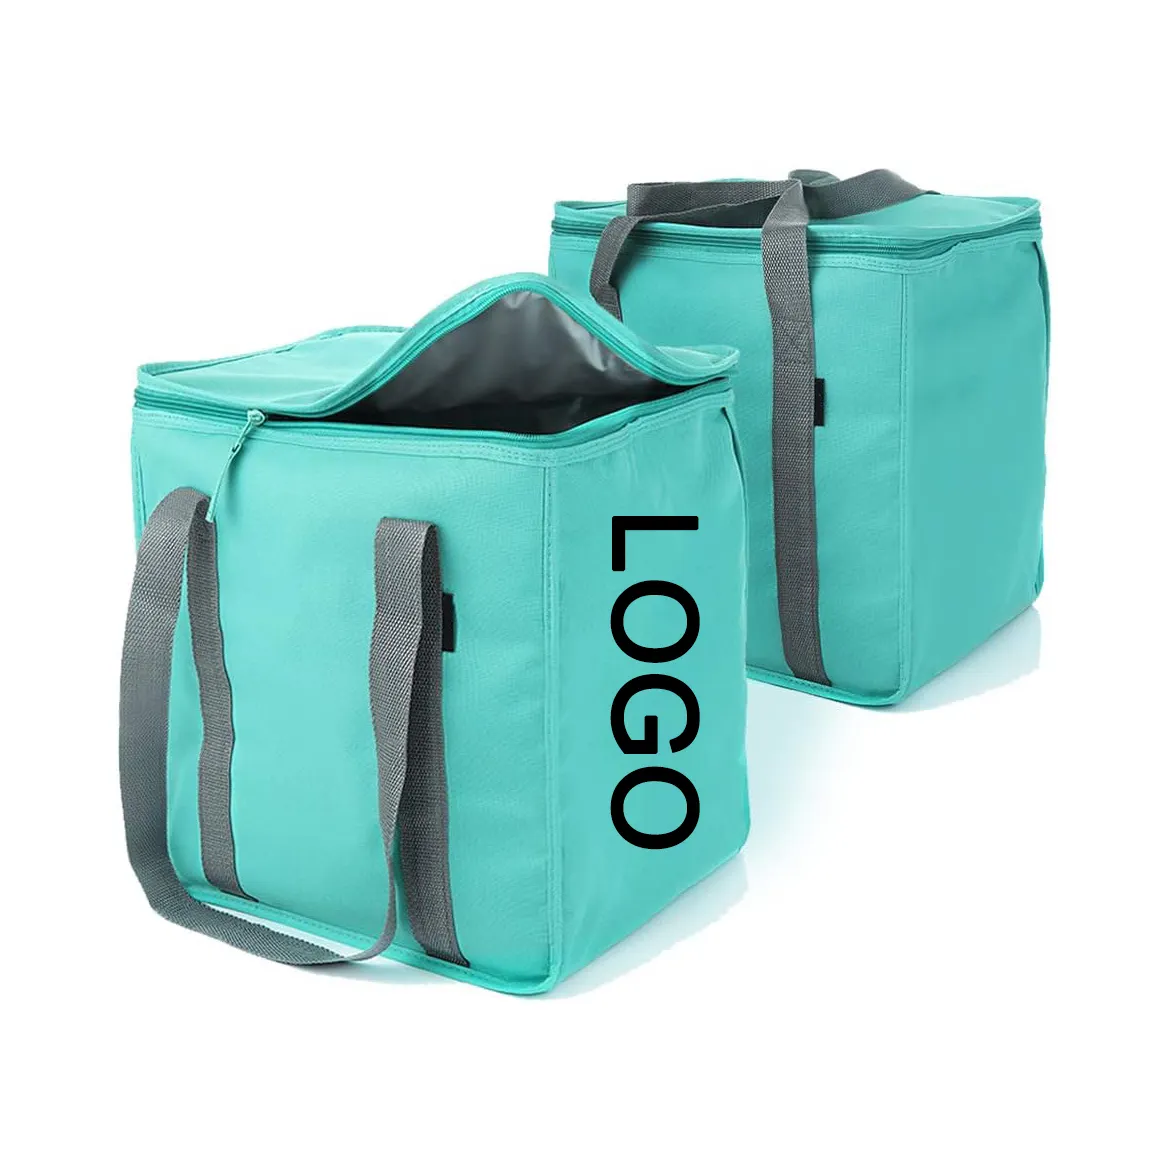 Nuovo spesso Super spesso di alta qualità verde quadrate tote cooler shopping lattine isolanti per il pranzo imballaggio per outd cooler bag